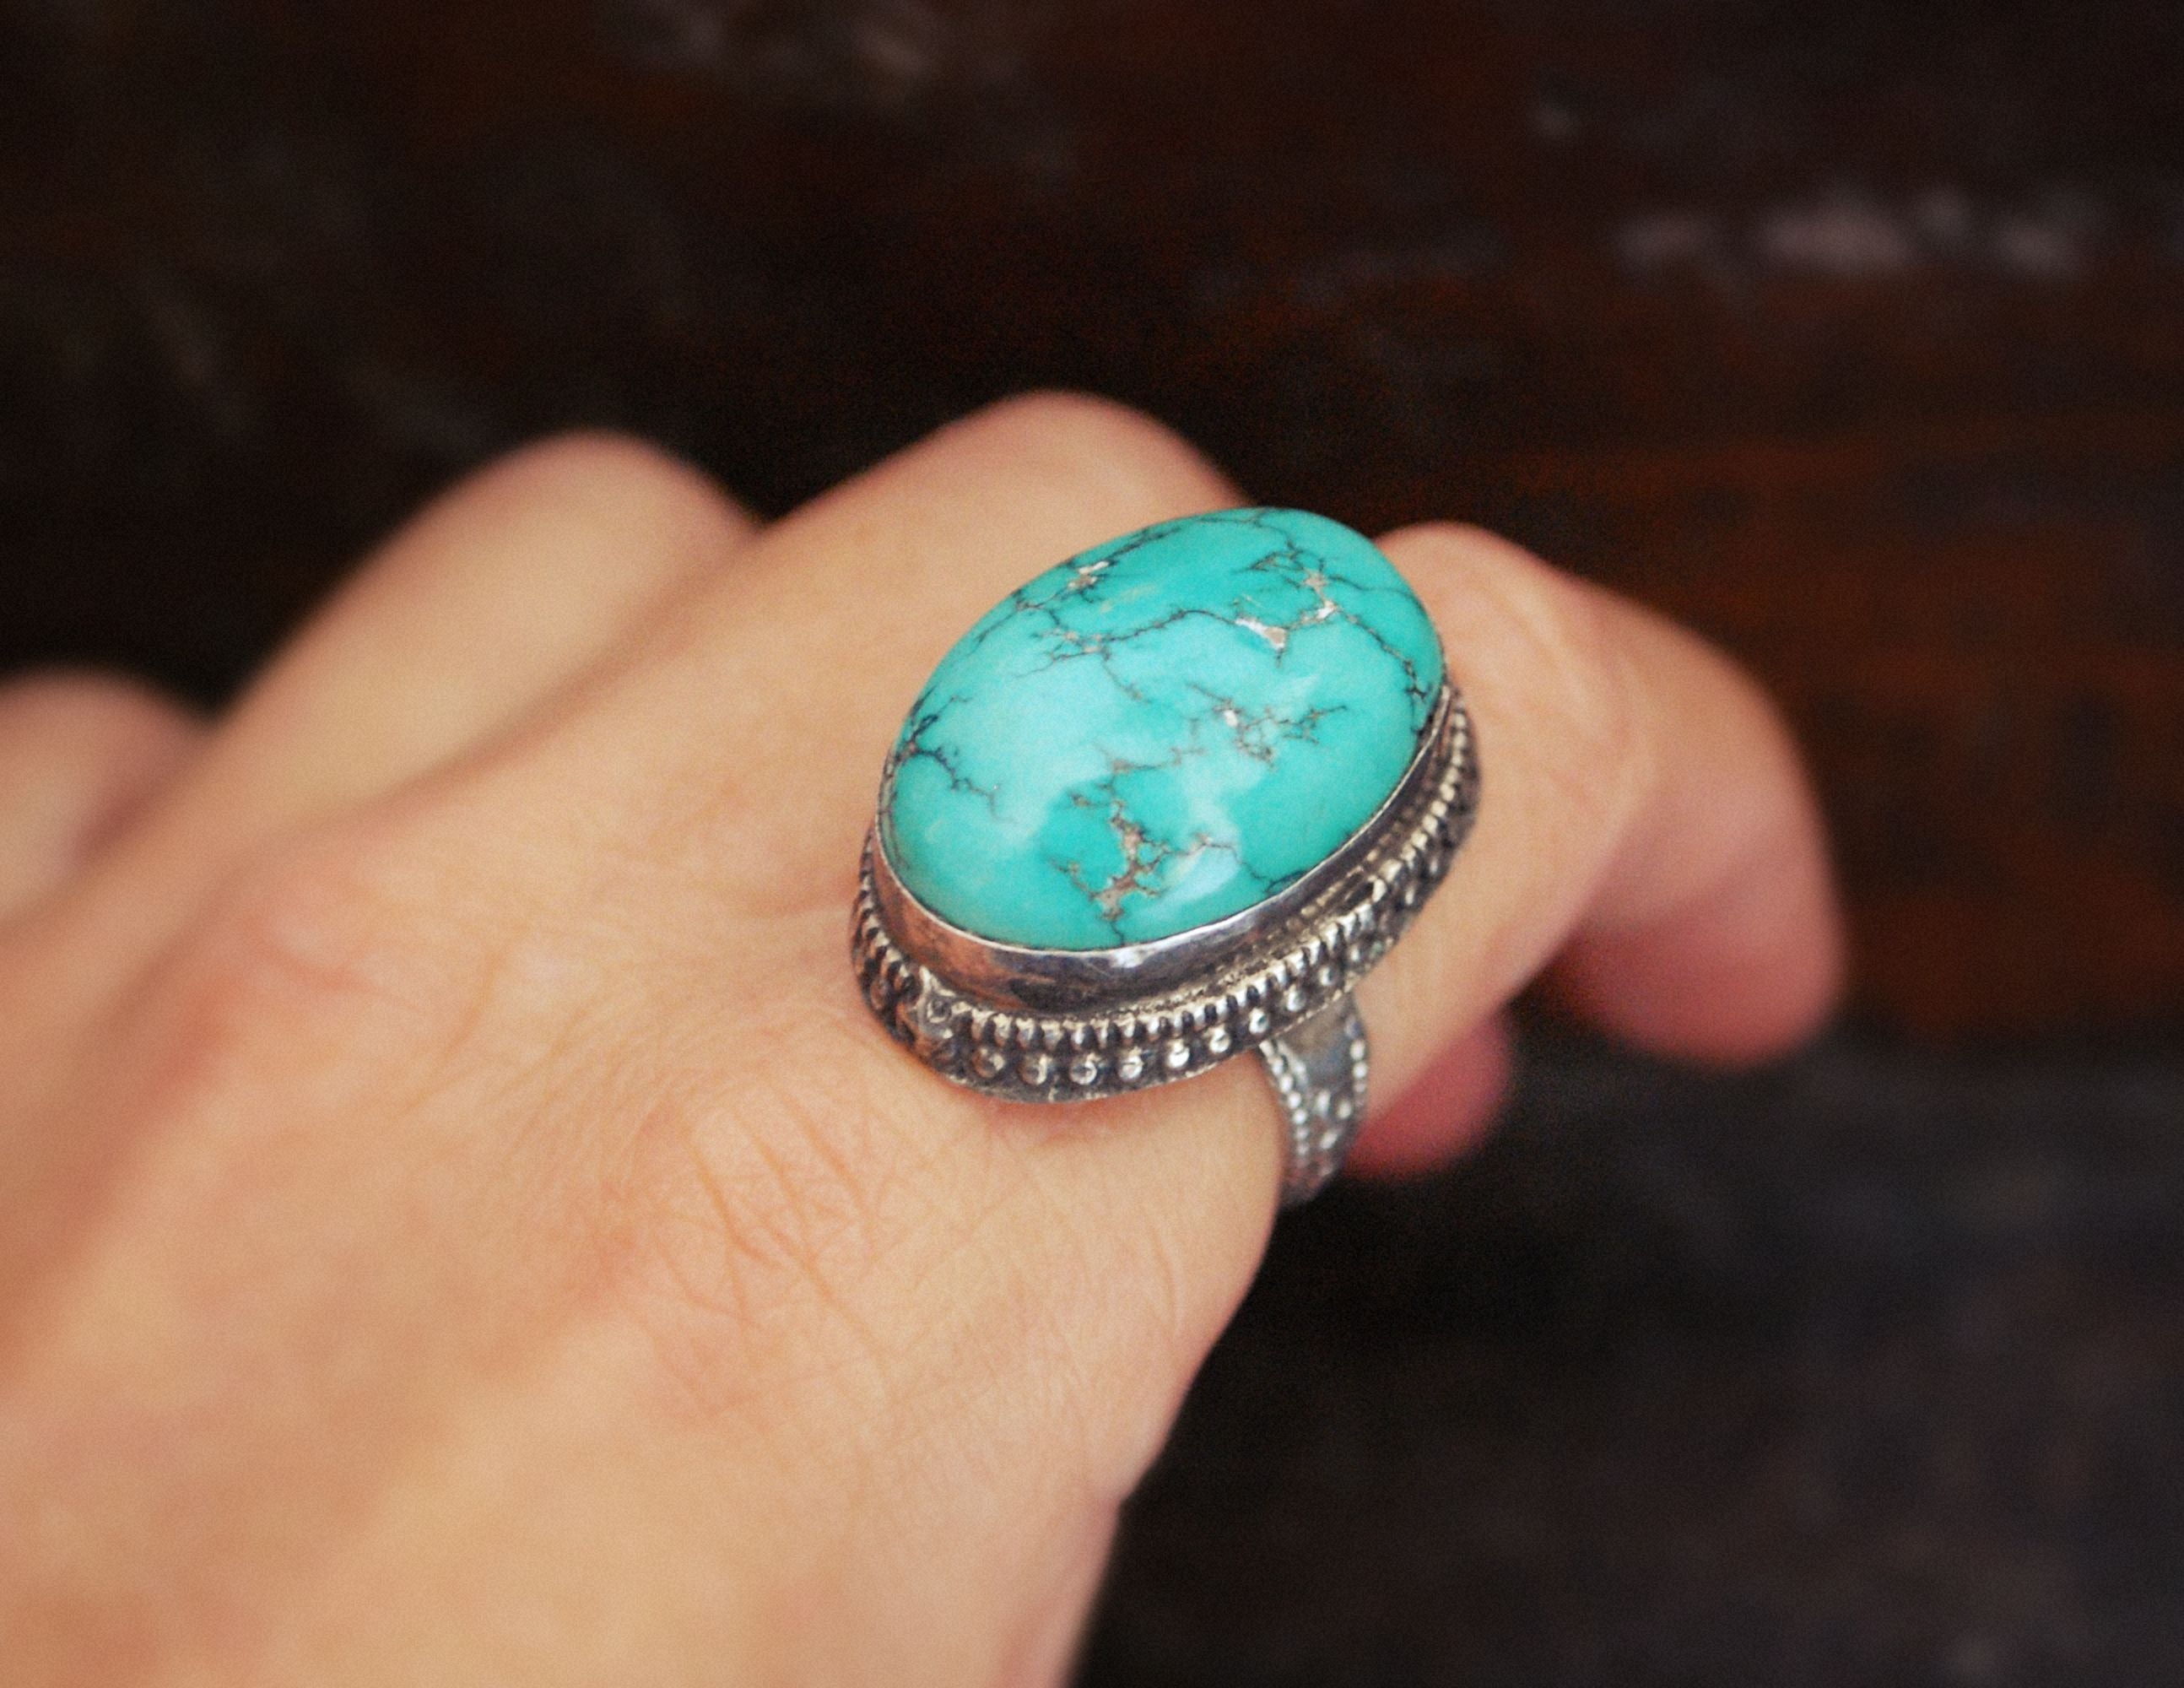 Large Nepali Turquoise Ring - Size 7.5